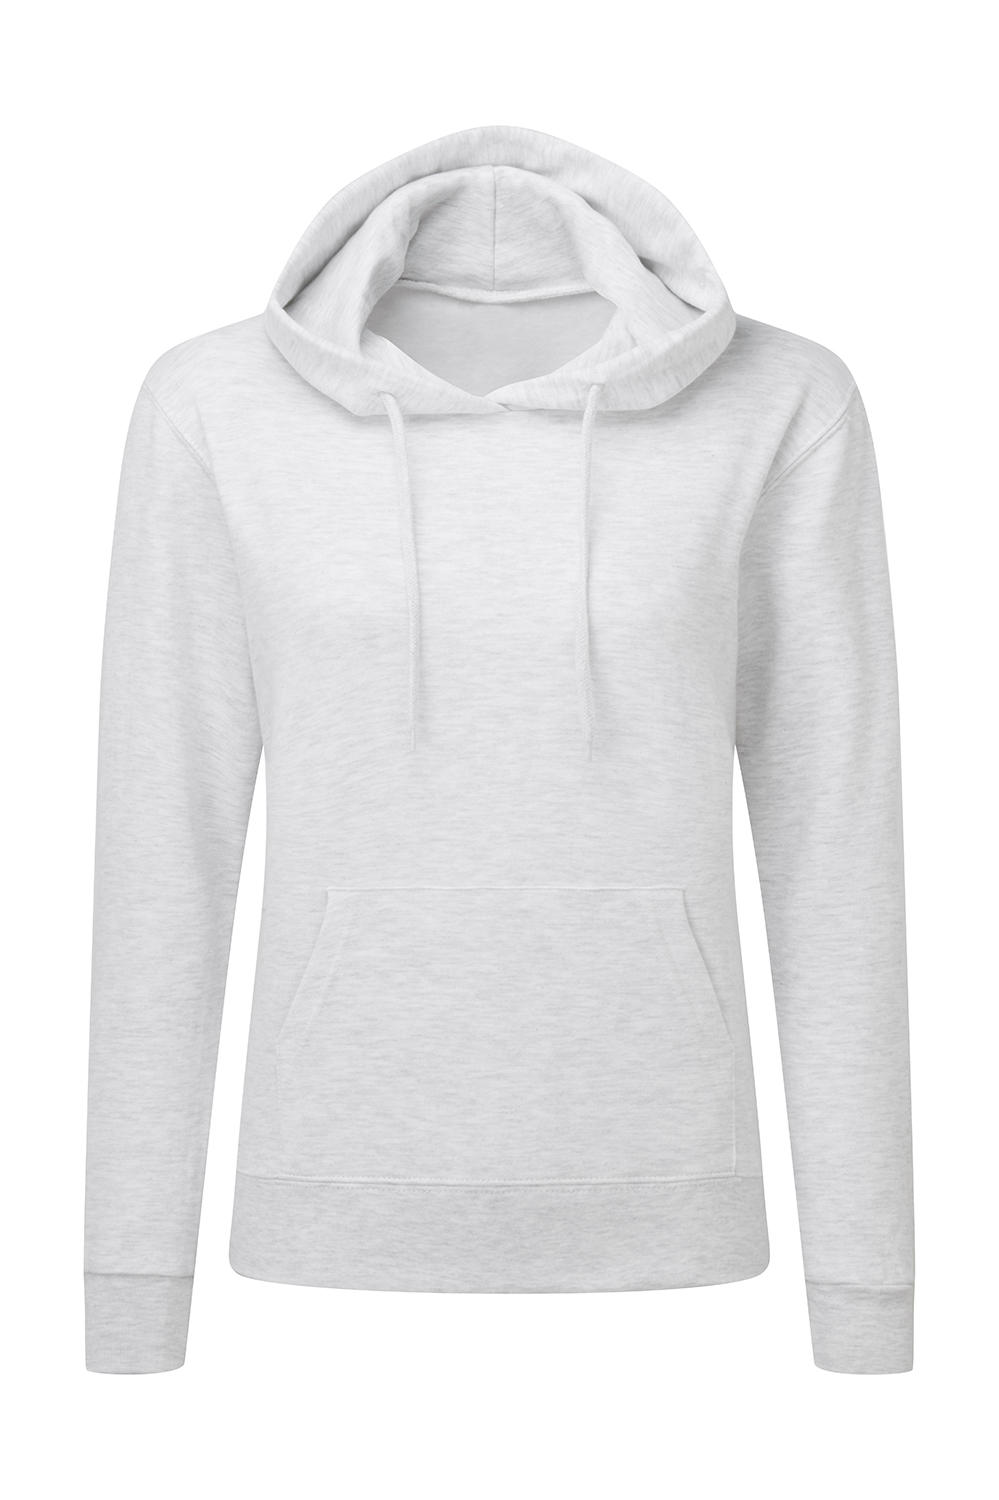  Ladies Hooded Sweatshirt in Farbe Ash Grey